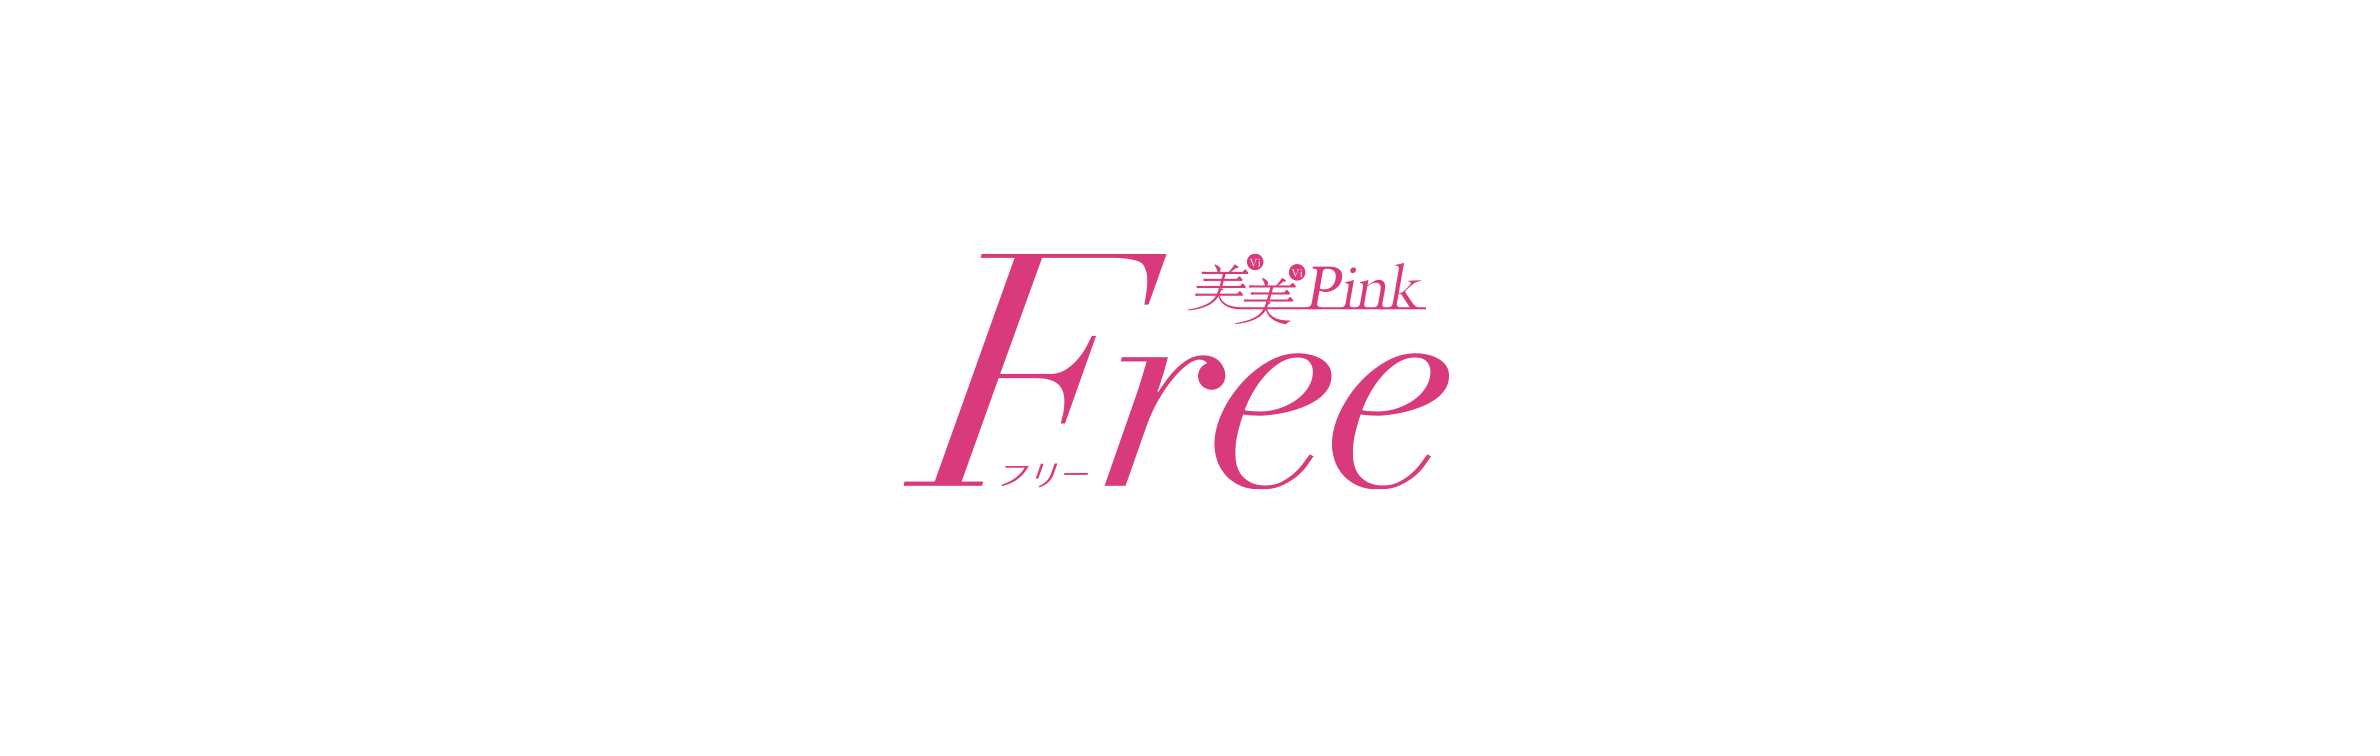 美美Pink Free